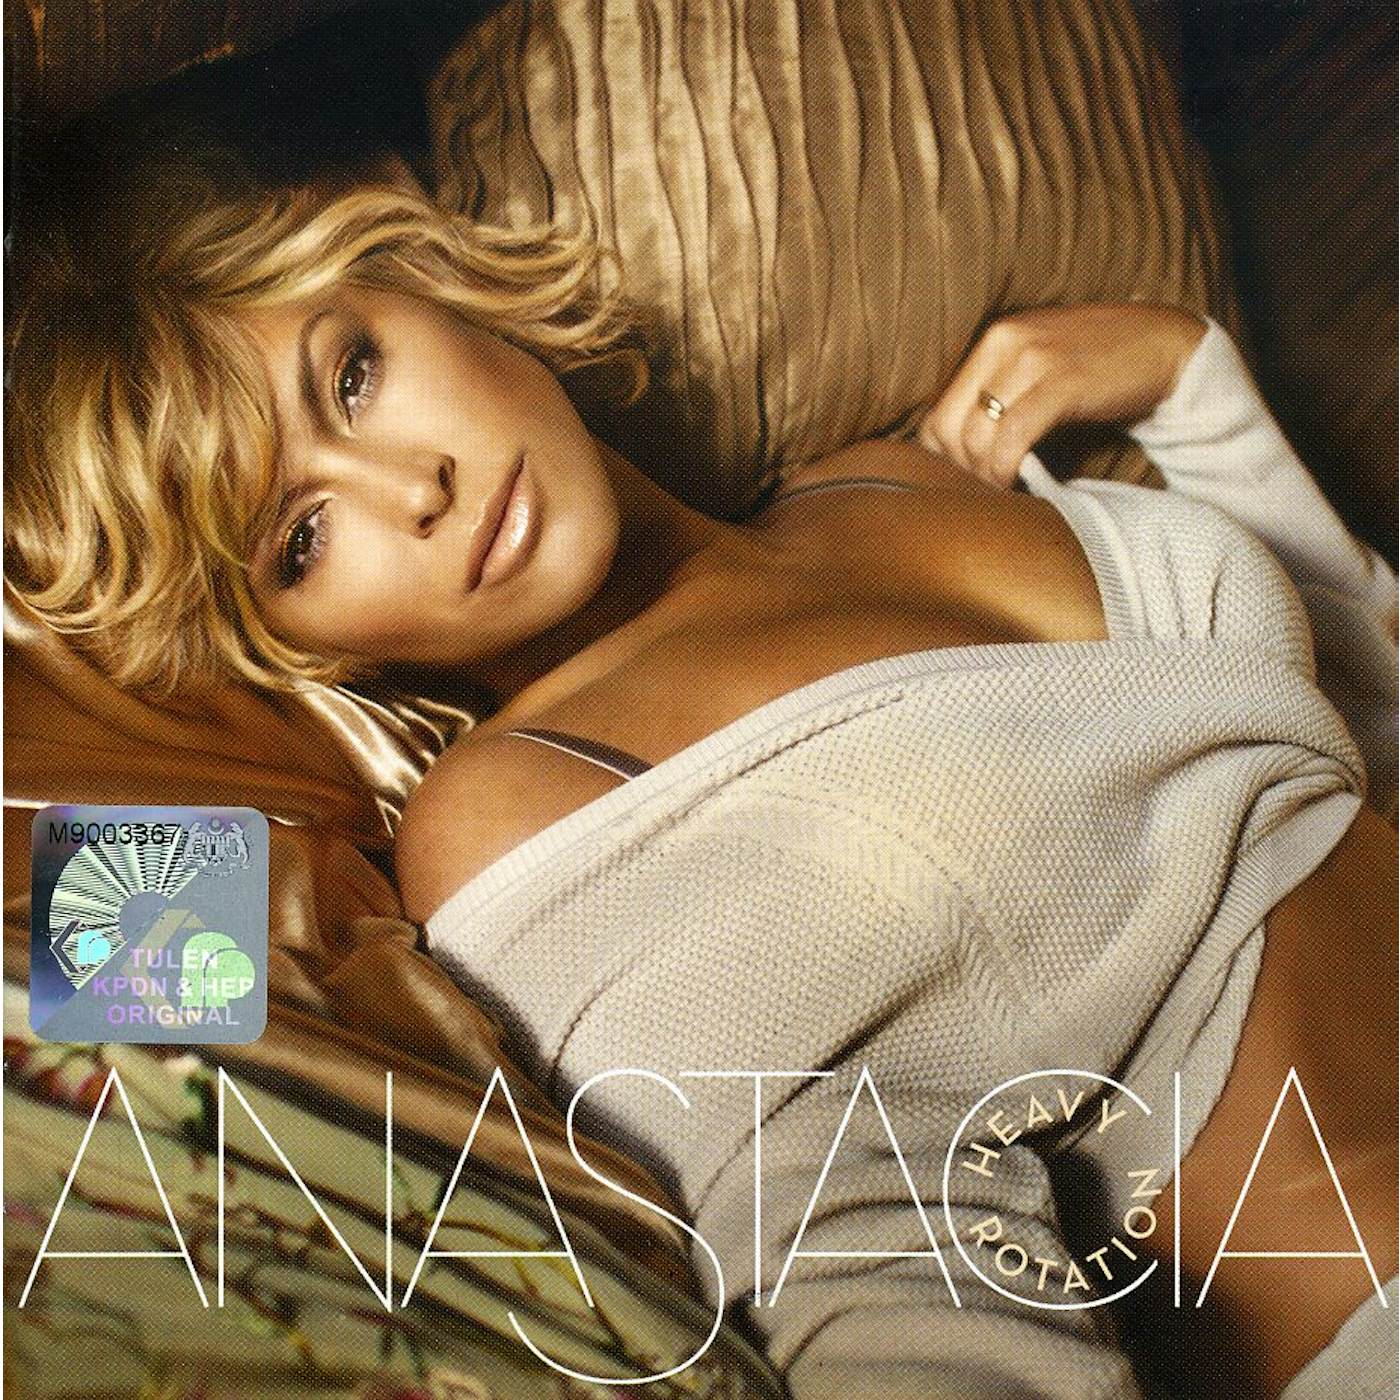 Anastacia HEAVY ROTATION CD